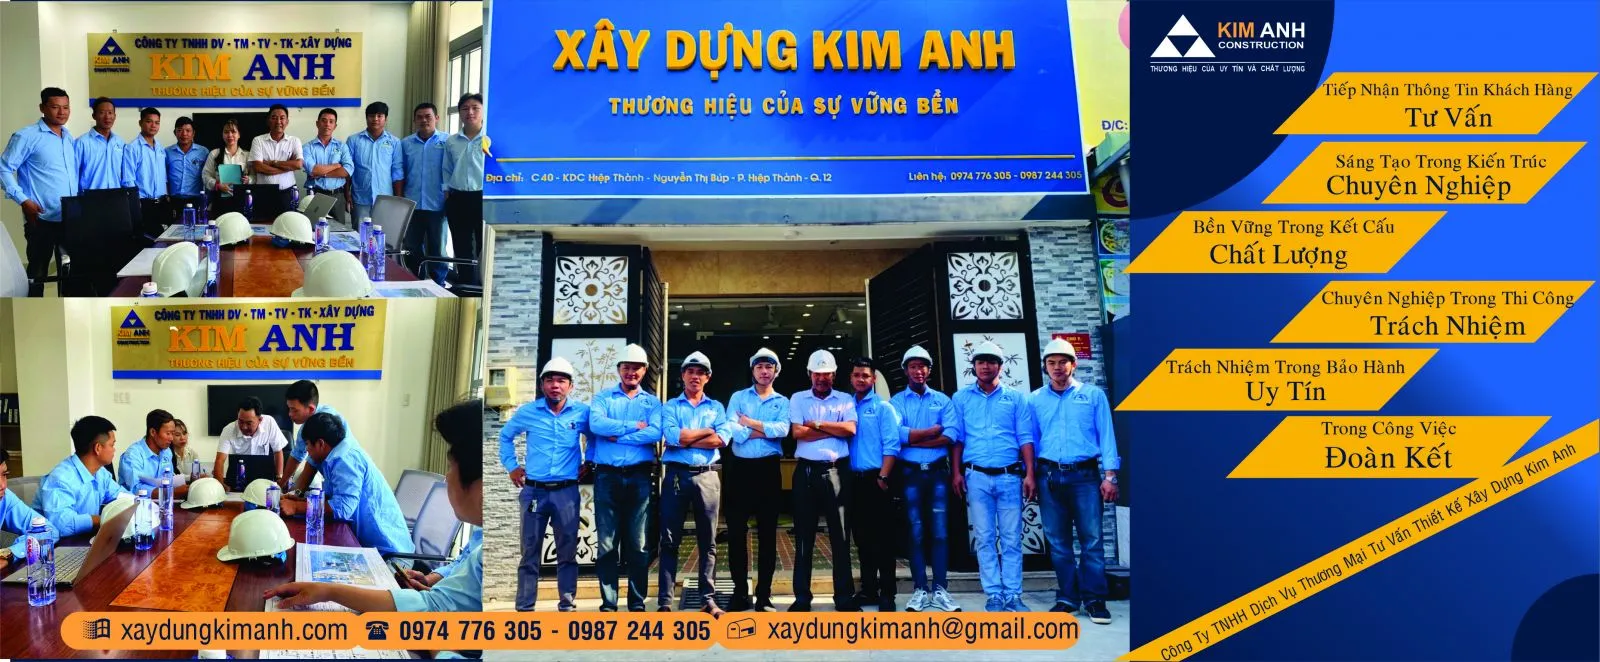 Xây Dựng Kim Anh: Công ty xây dựng nhà uy tín Quận 12